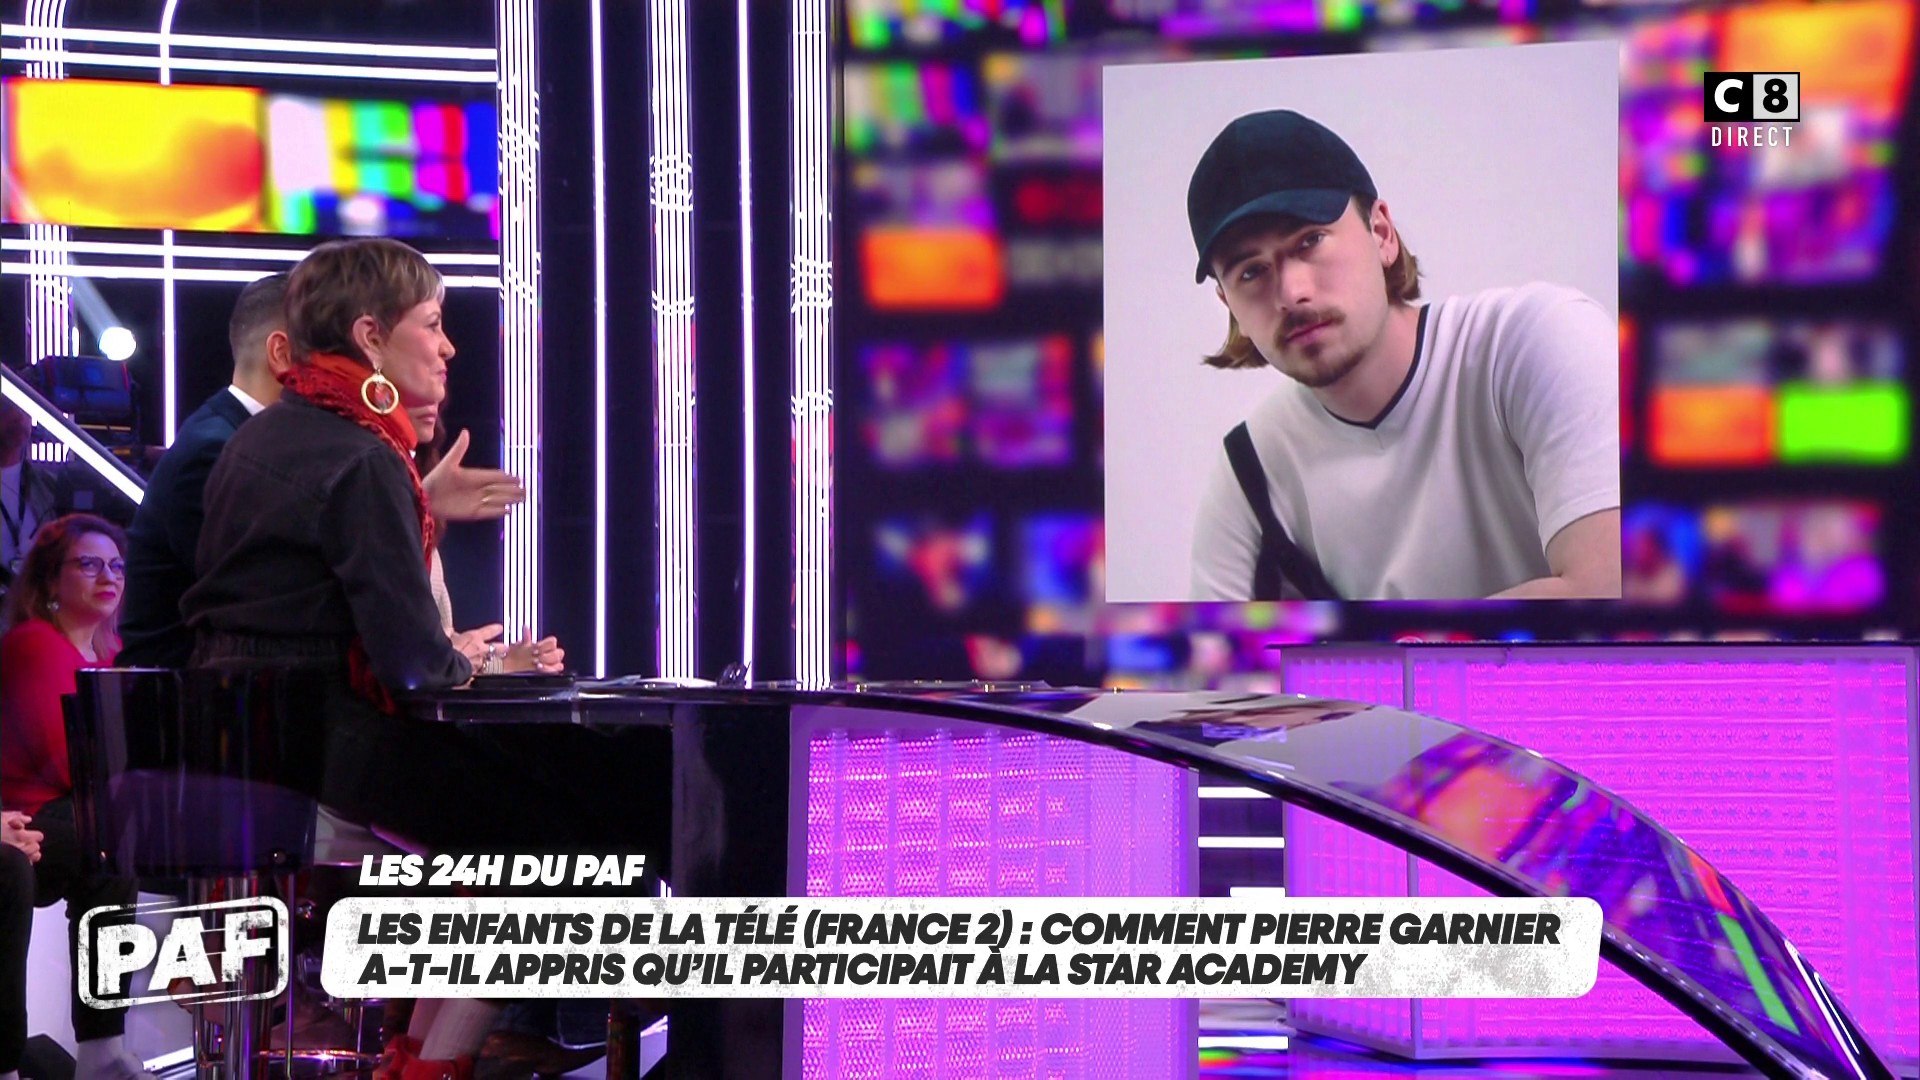 Les chroniqueurs donnent leur avis sur la carrière de Pierre Garnier depuis  la Star Academy - Vidéo Dailymotion